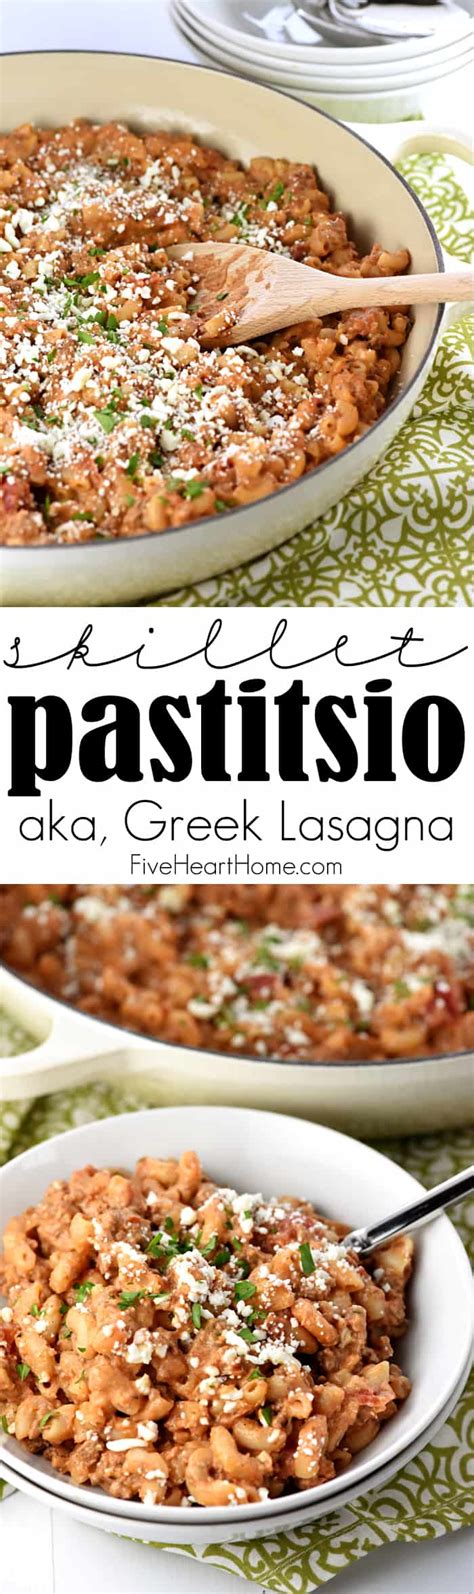 Easy Pastitsio Recipe - FIVEheartHOME